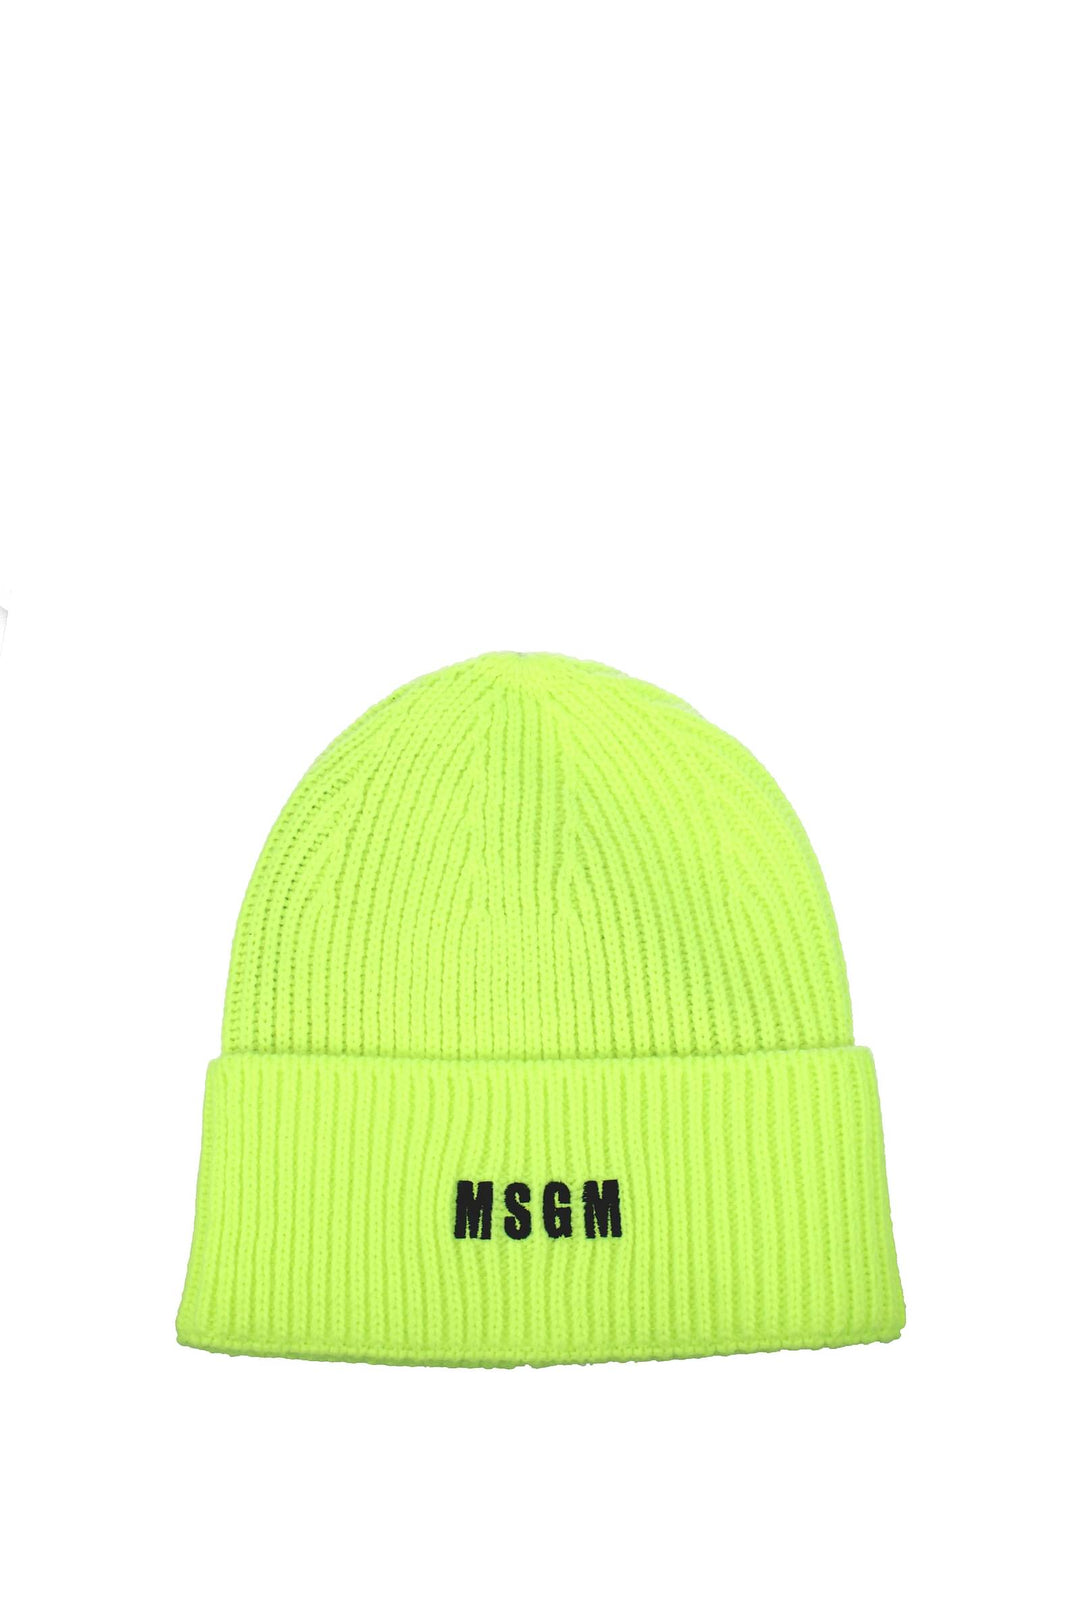 Cappelli Acrilica Verde Verde Fluo - MSGM - Uomo